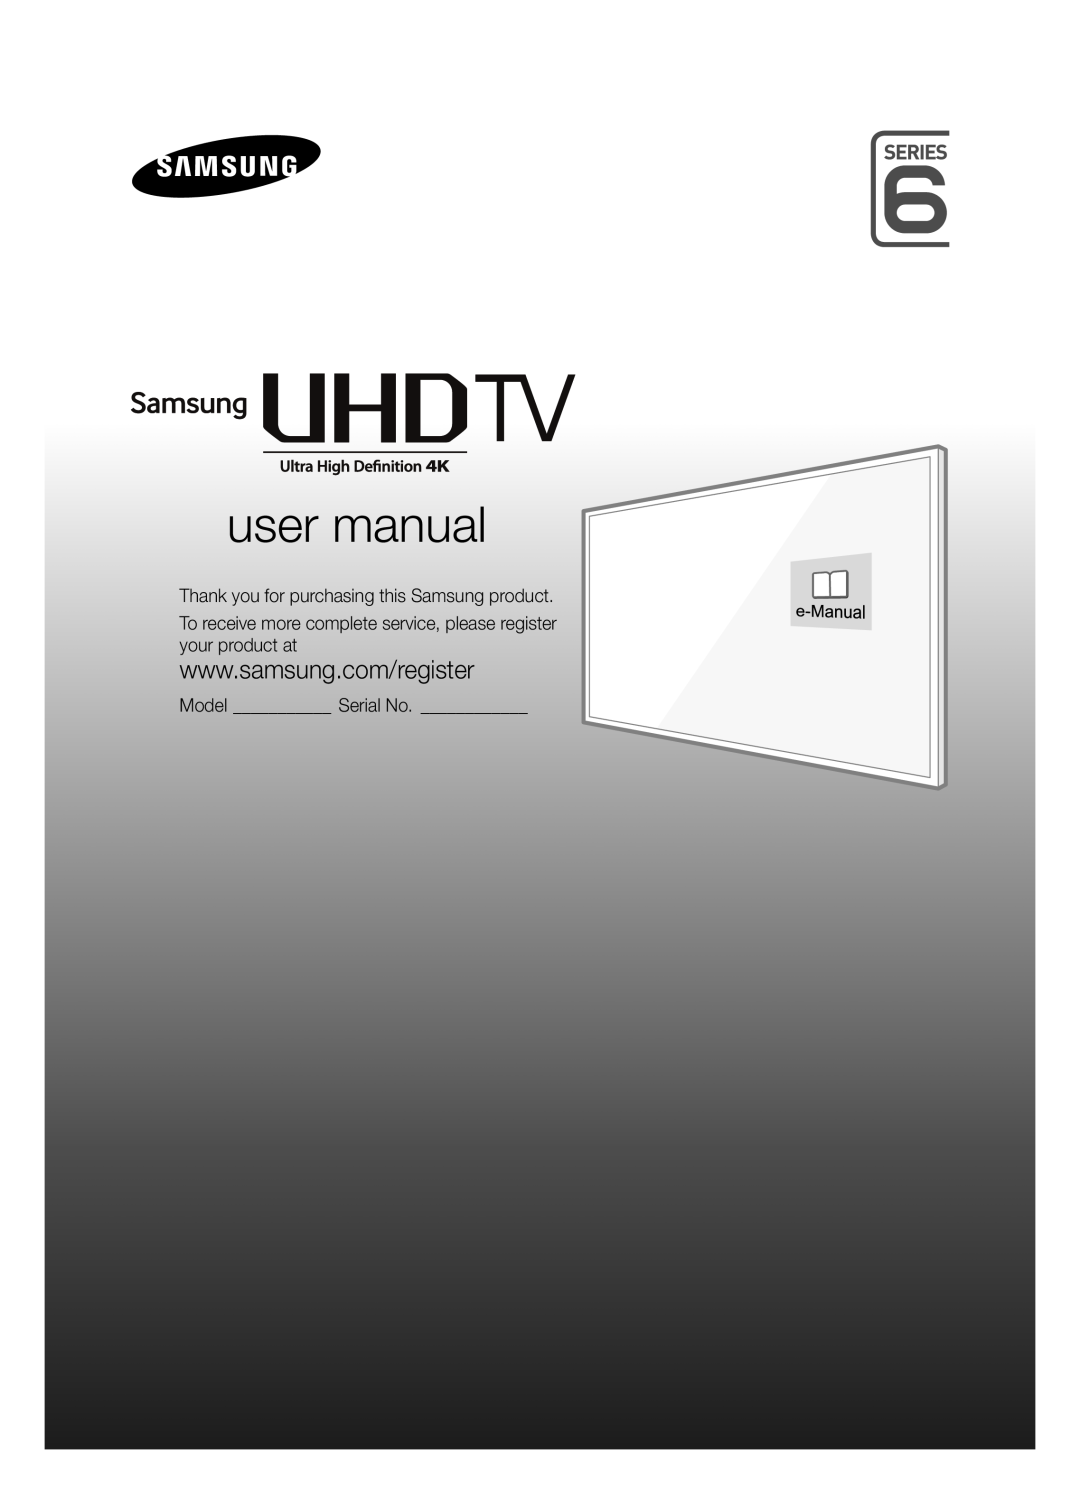 Samsung UE48JU6495UXZG, UE40JU6495UXZG, UE48JU6490UXZG, UE40JU6485UXZG manual Declaration of Conformity, Television Receiver 